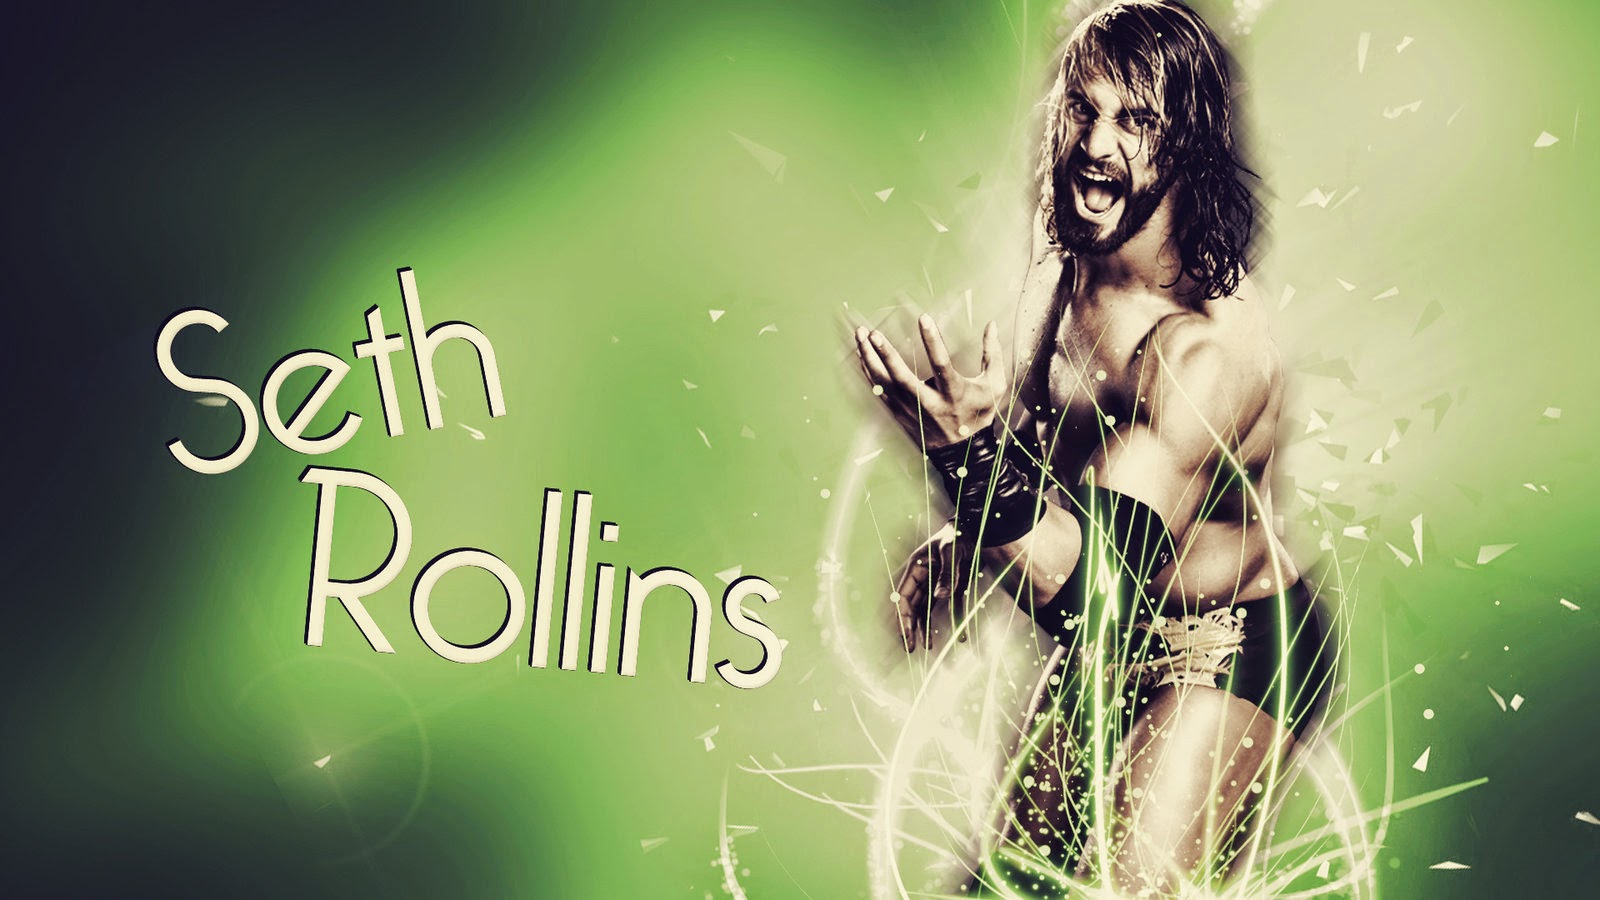 Seth Rollins HD Wallpaper Hot